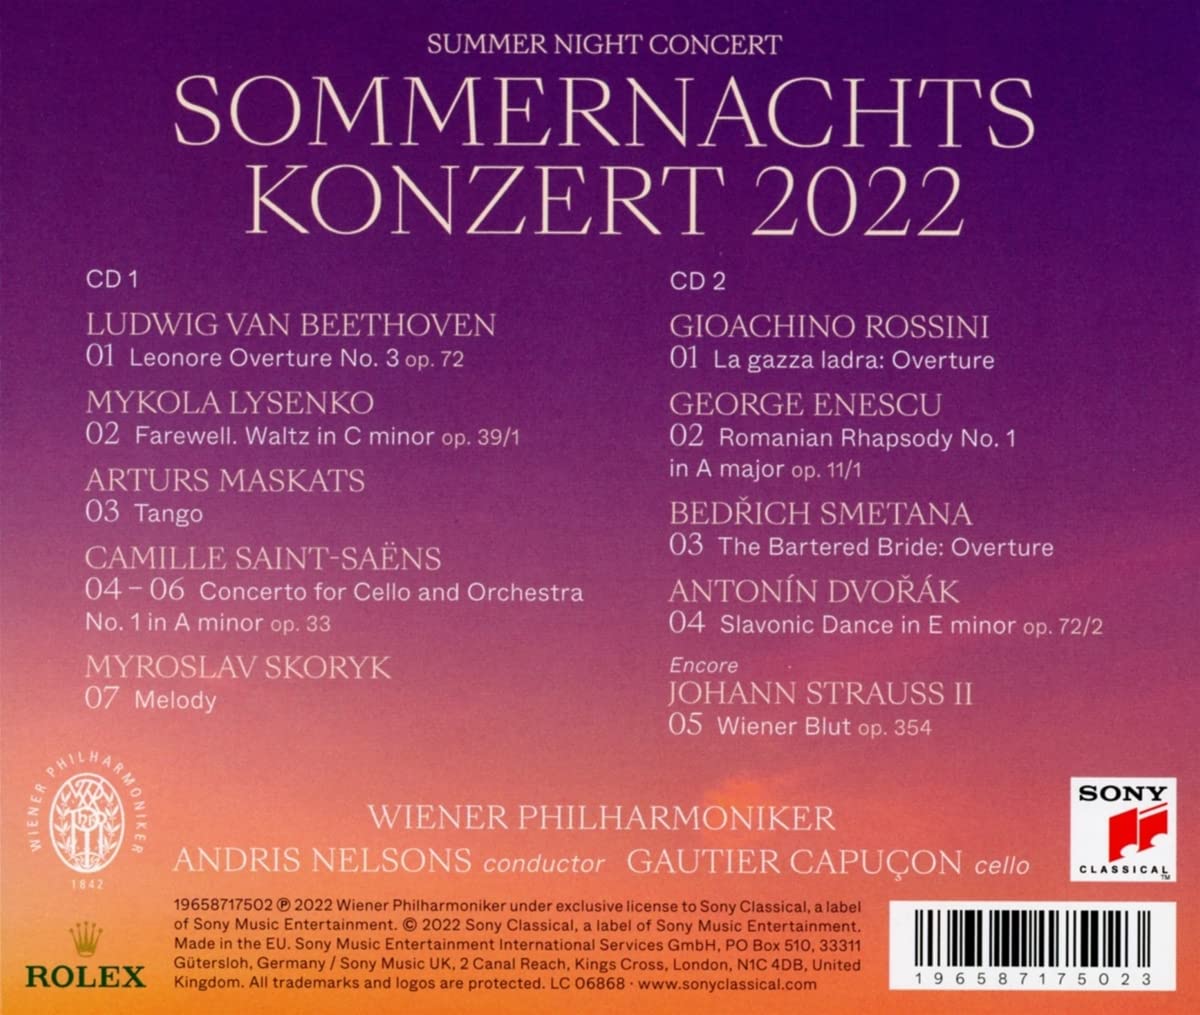 2022 빈 필하모닉 여름 음악회 [썸머 나잇 콘서트] (Summer Night Concert 2022 - Andris Nelsons)